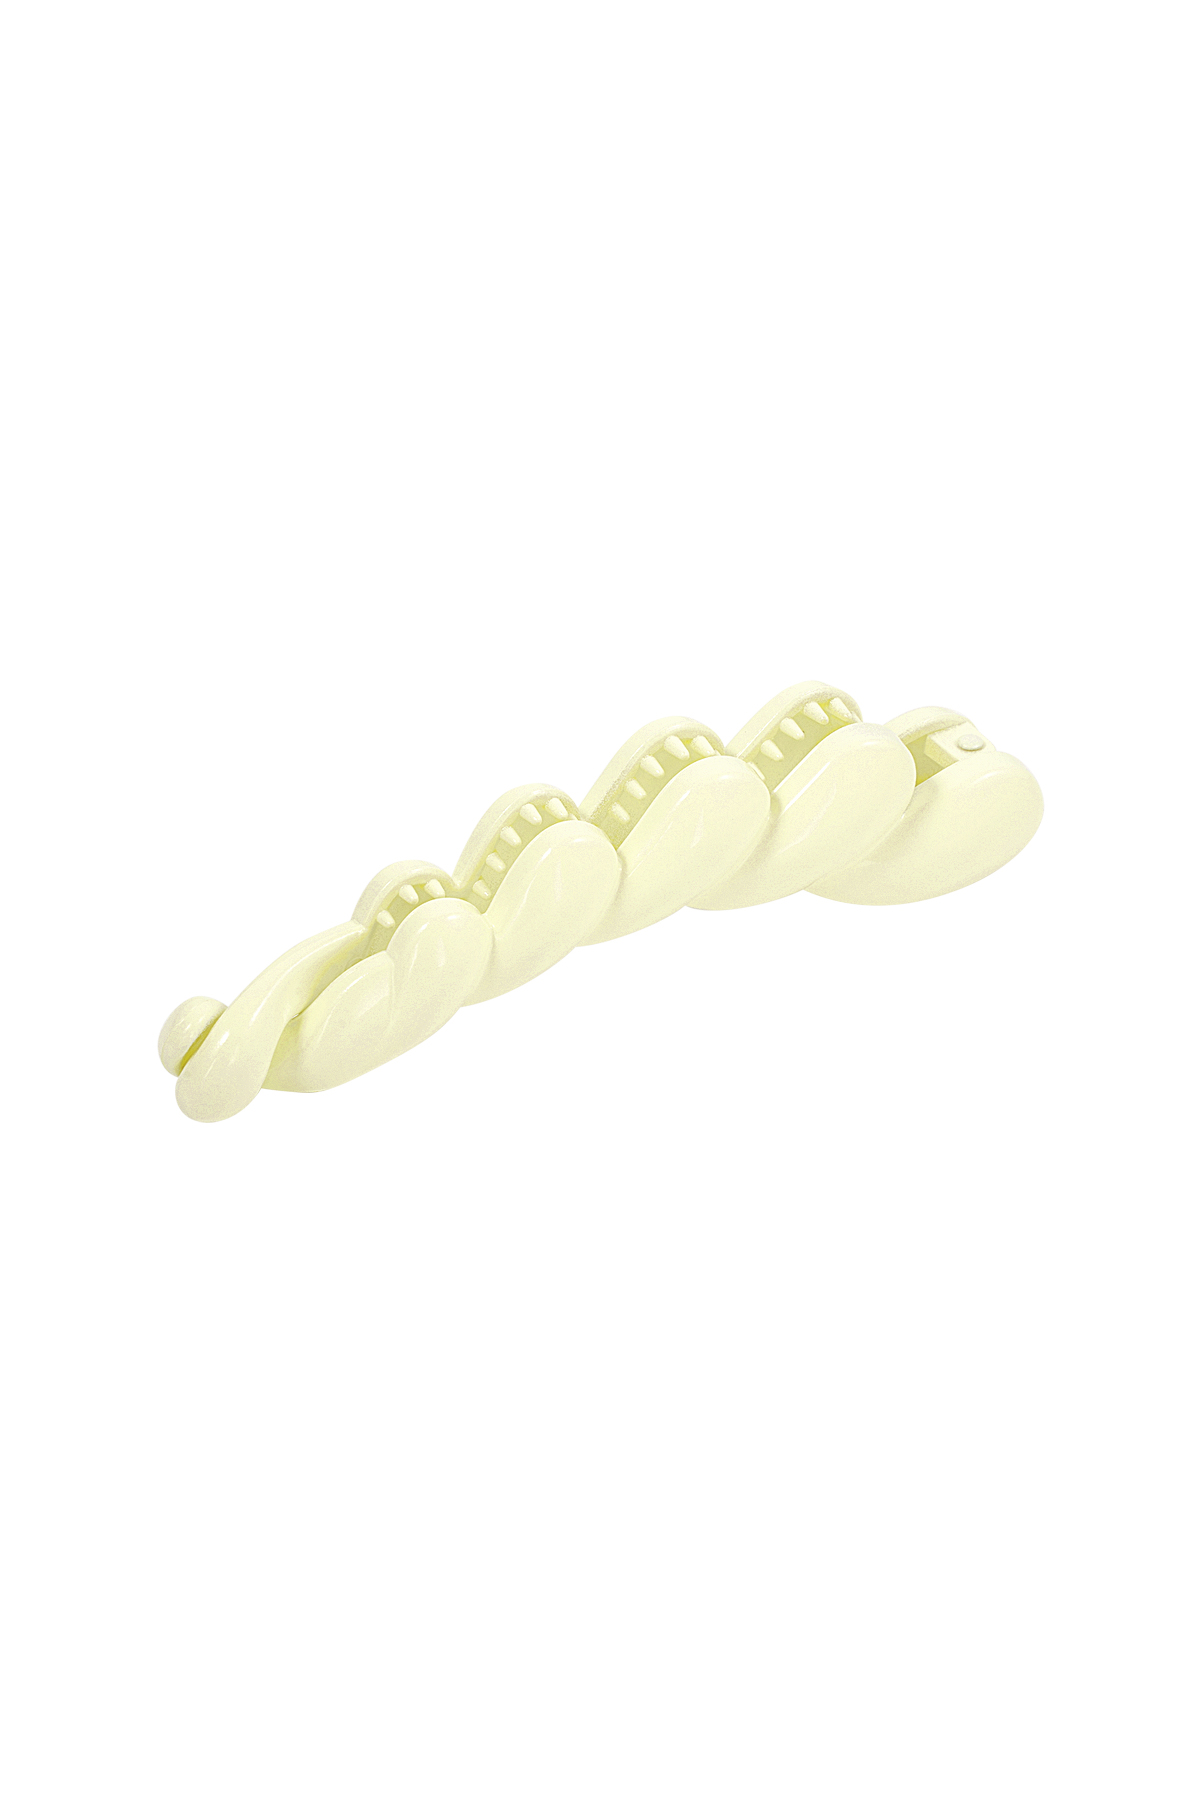 Hair clip braid - cream h5 